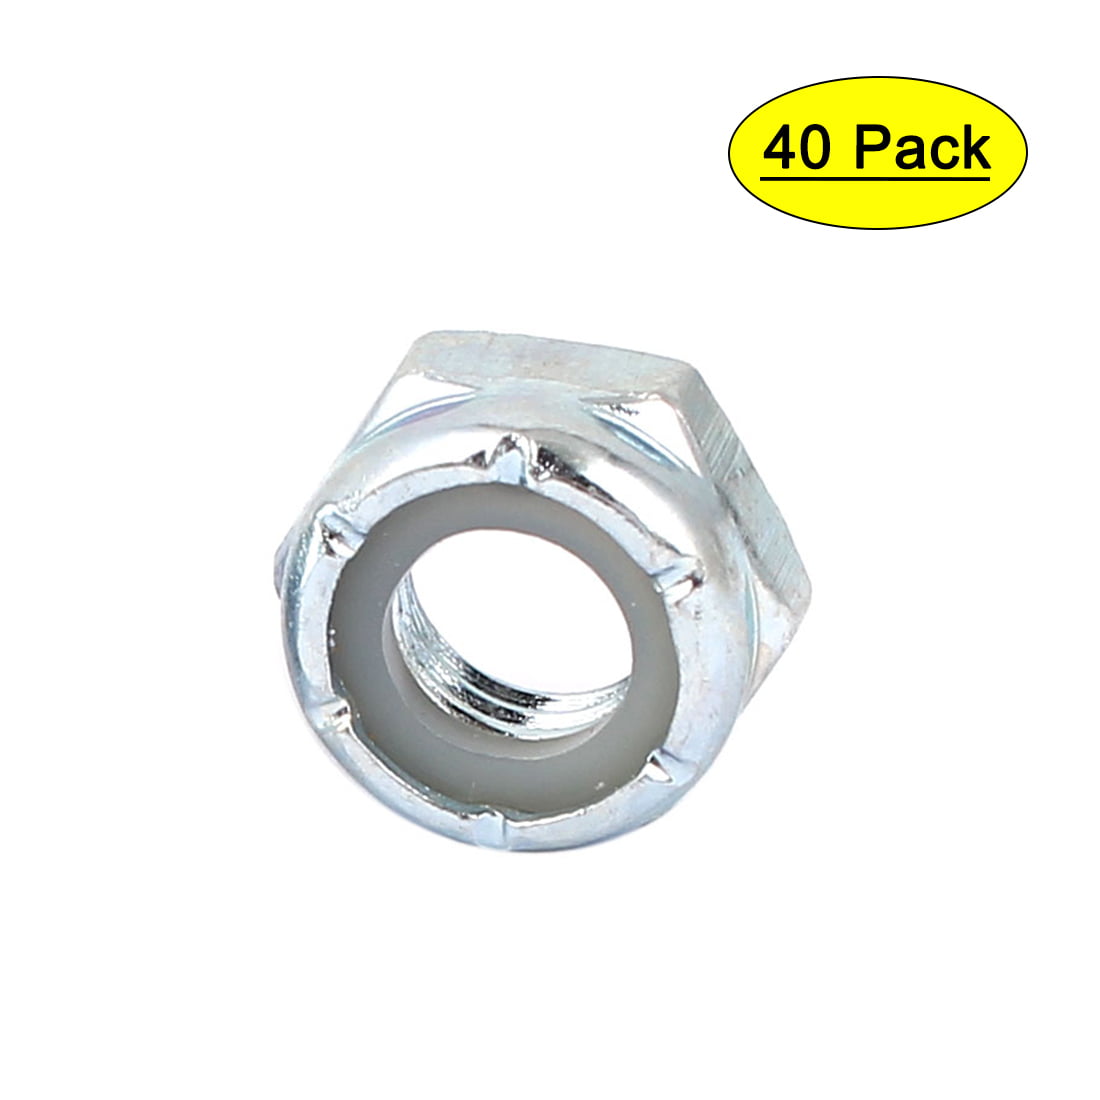 Qty 100 M5 Zinc Plated Hex Nyloc Nut 5mm Nylon Insert Lock Nuts 